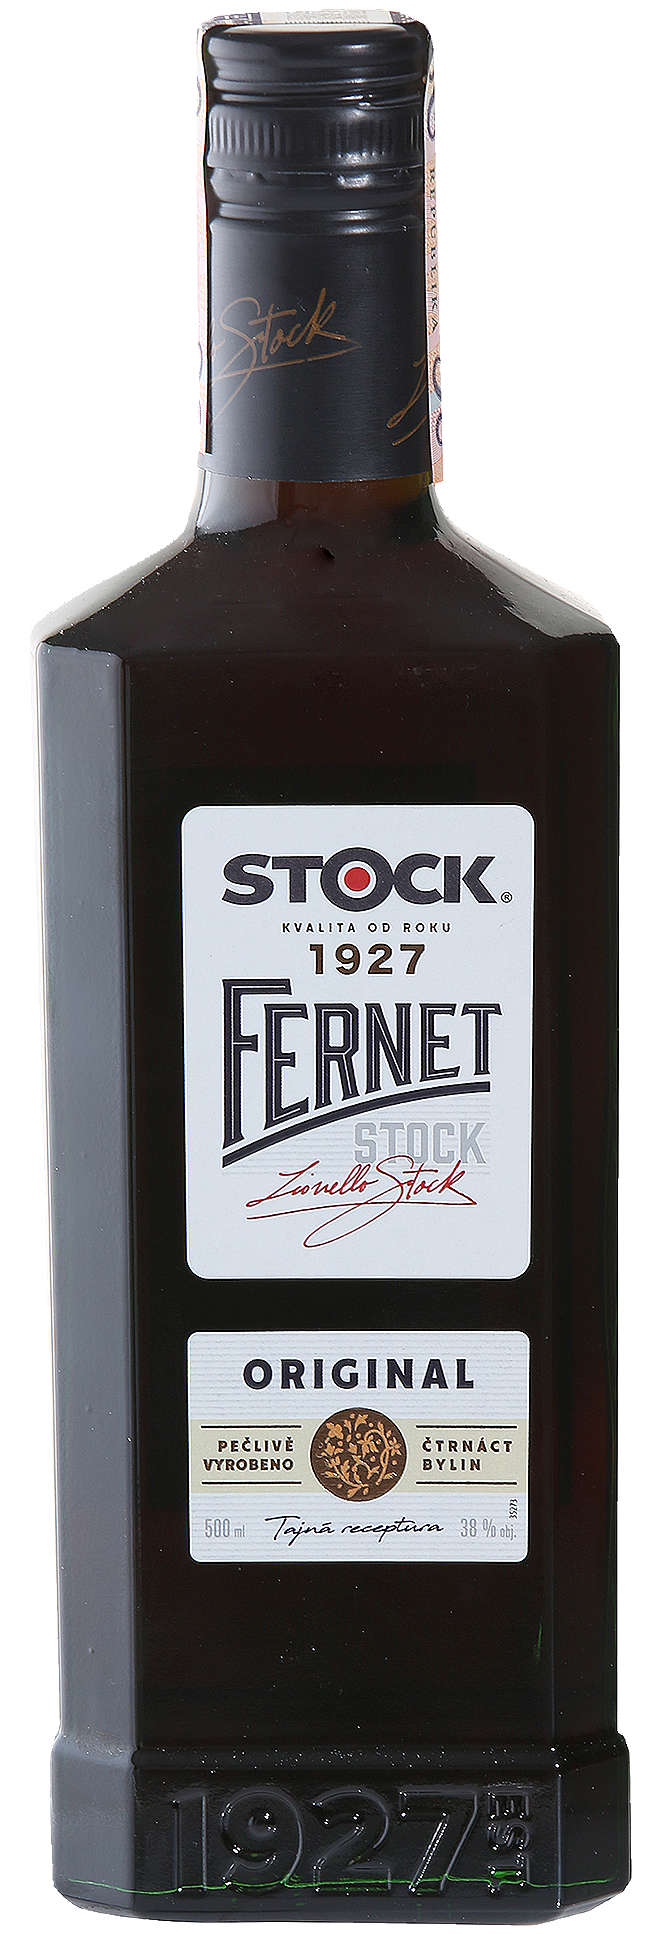 Zobrazenie výrobku Stock Fernet